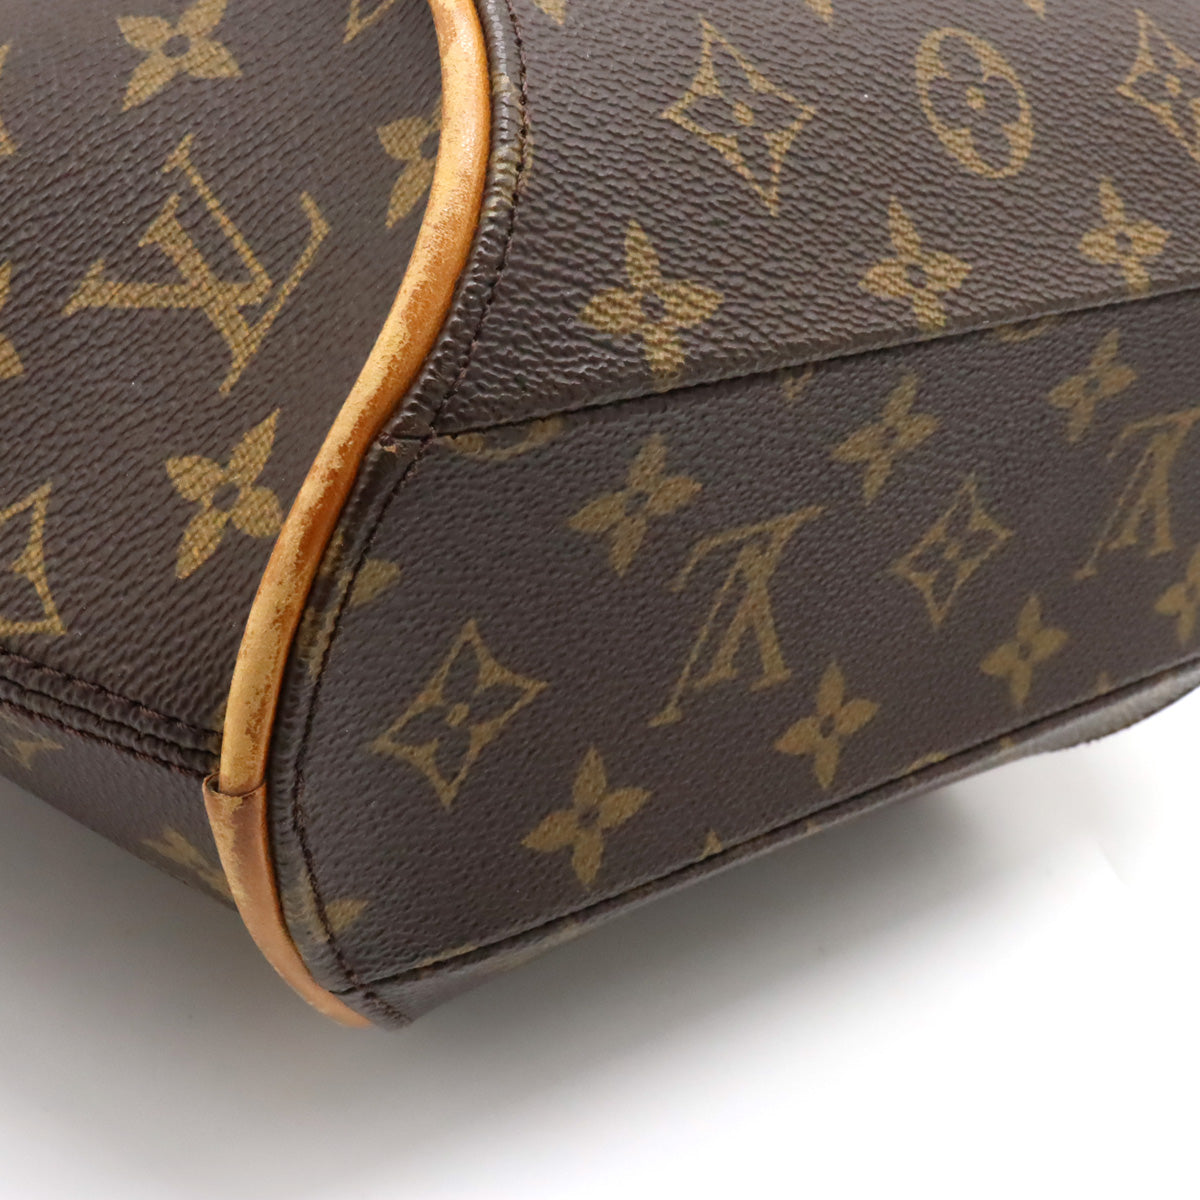 Authentic - LOUIS VUITTON Handbag Ellipse PM M51127 - Used In